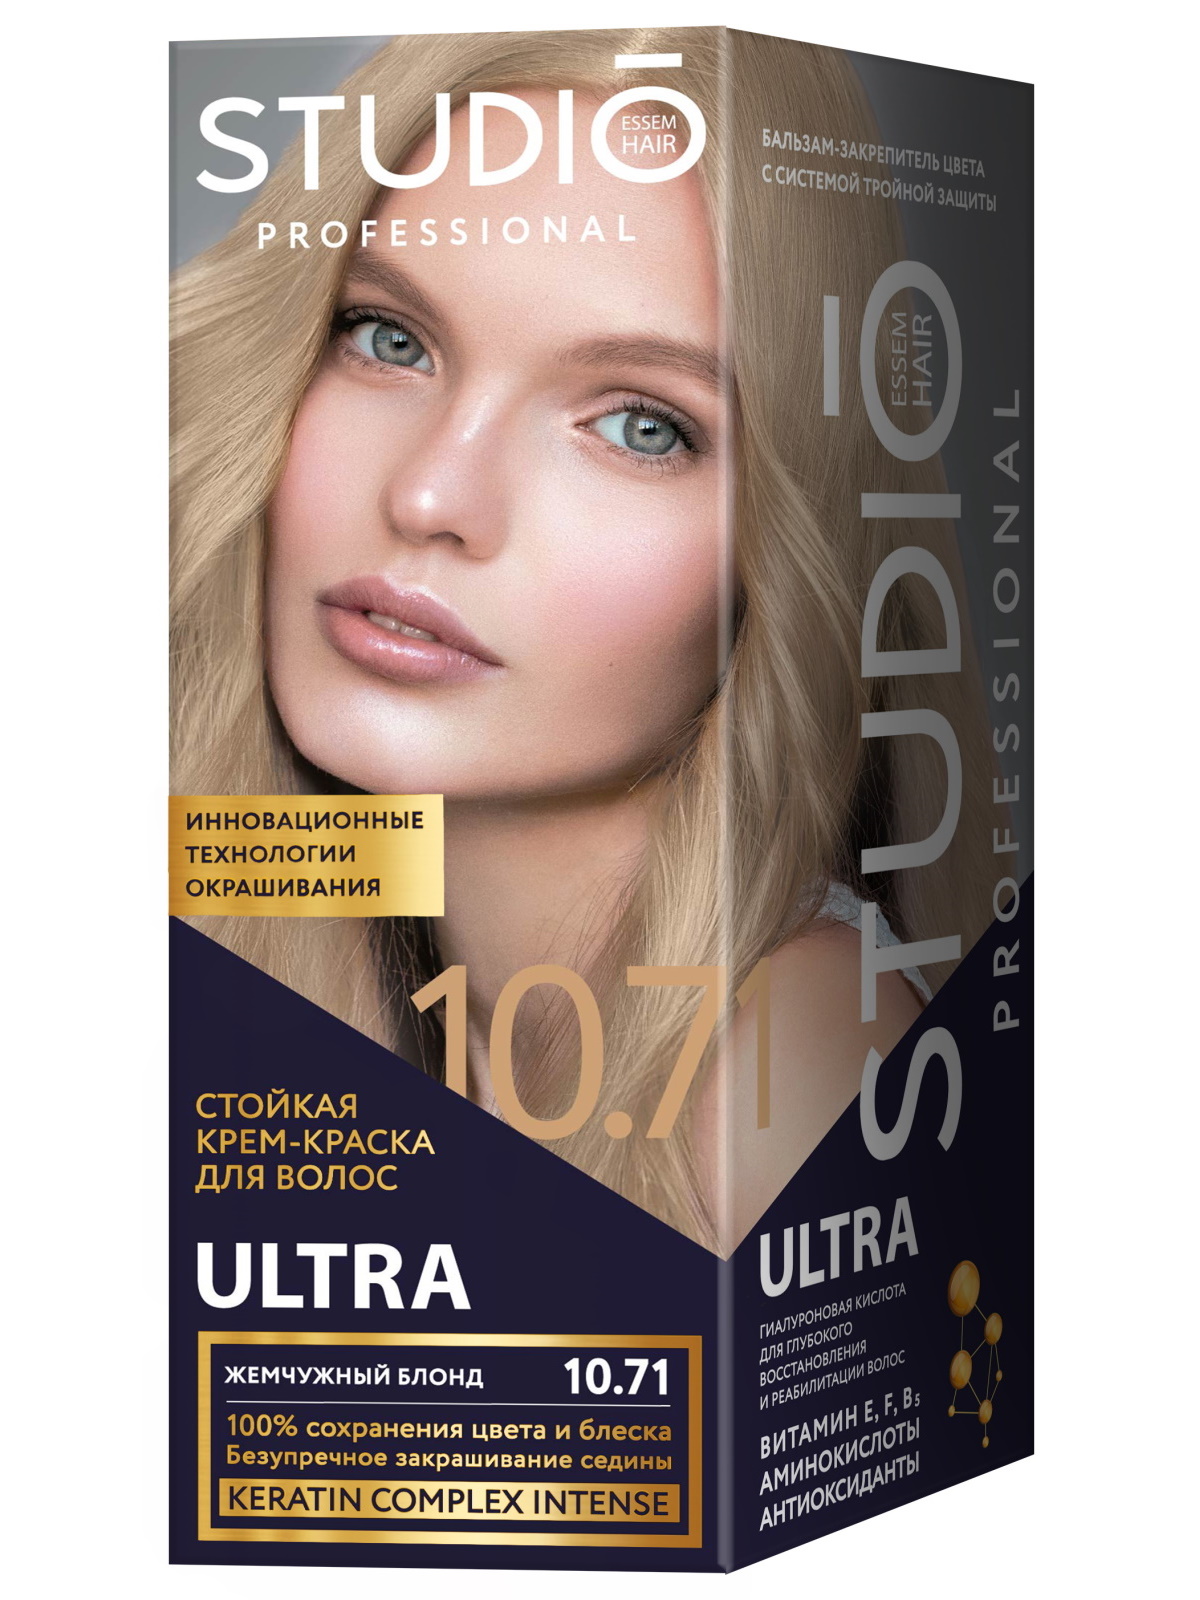 Комплект ULTRA для окрашивания волос STUDIO PROFESSIONAL 10.71 жемчужный блонд 2*50+15 мл zeitun шампунь для тонких и хрупких волос с иранской хной эффект ламинирования lamination effect